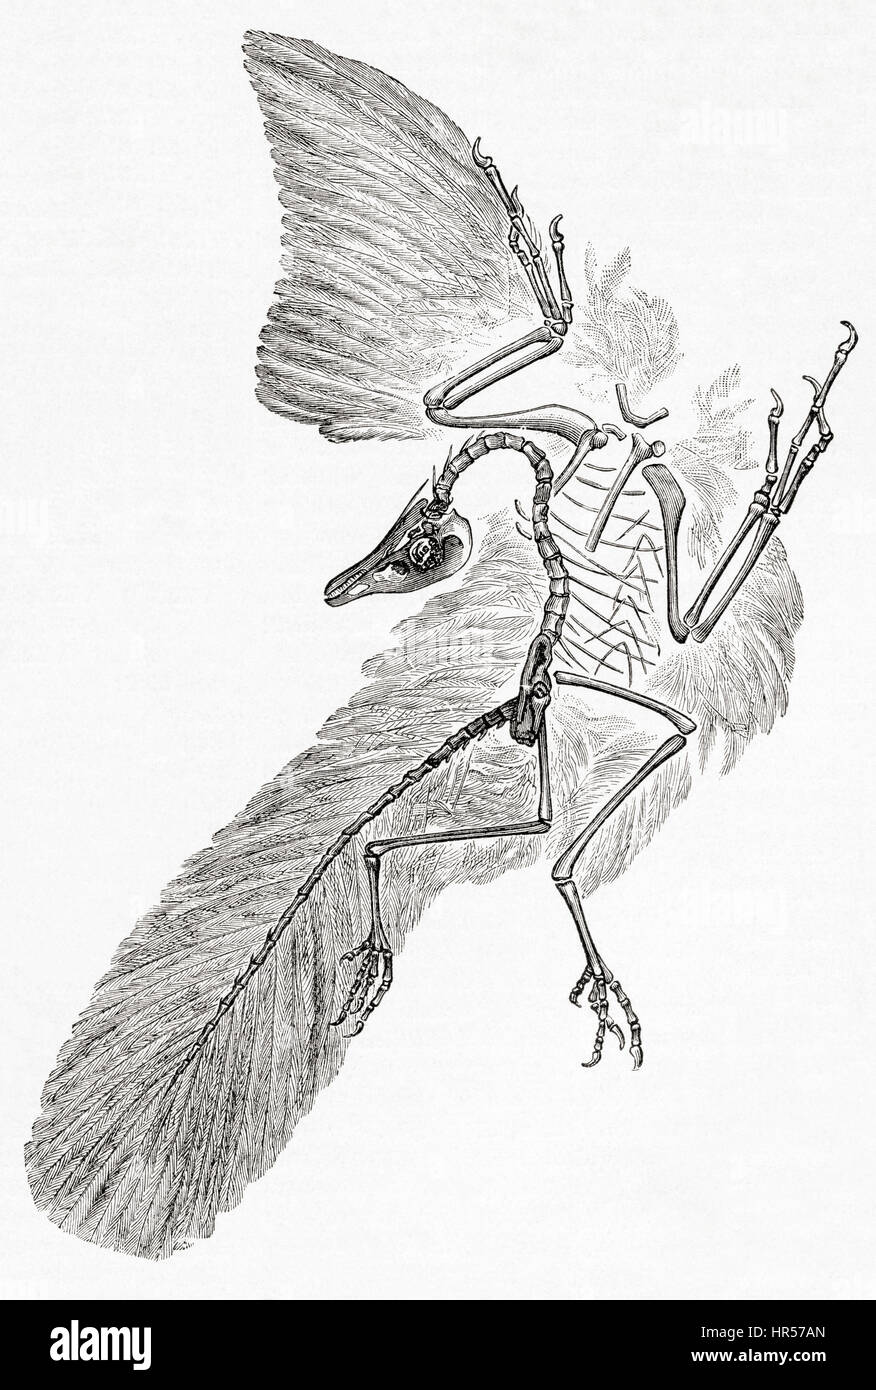 Un Archaeopteryx, genere di bird-come i dinosauri che è in fase di transizione tra non aviaria feathered dinosauri e uccelli moderno. Da Meyers lessico, pubblicato nel 1927. Foto Stock